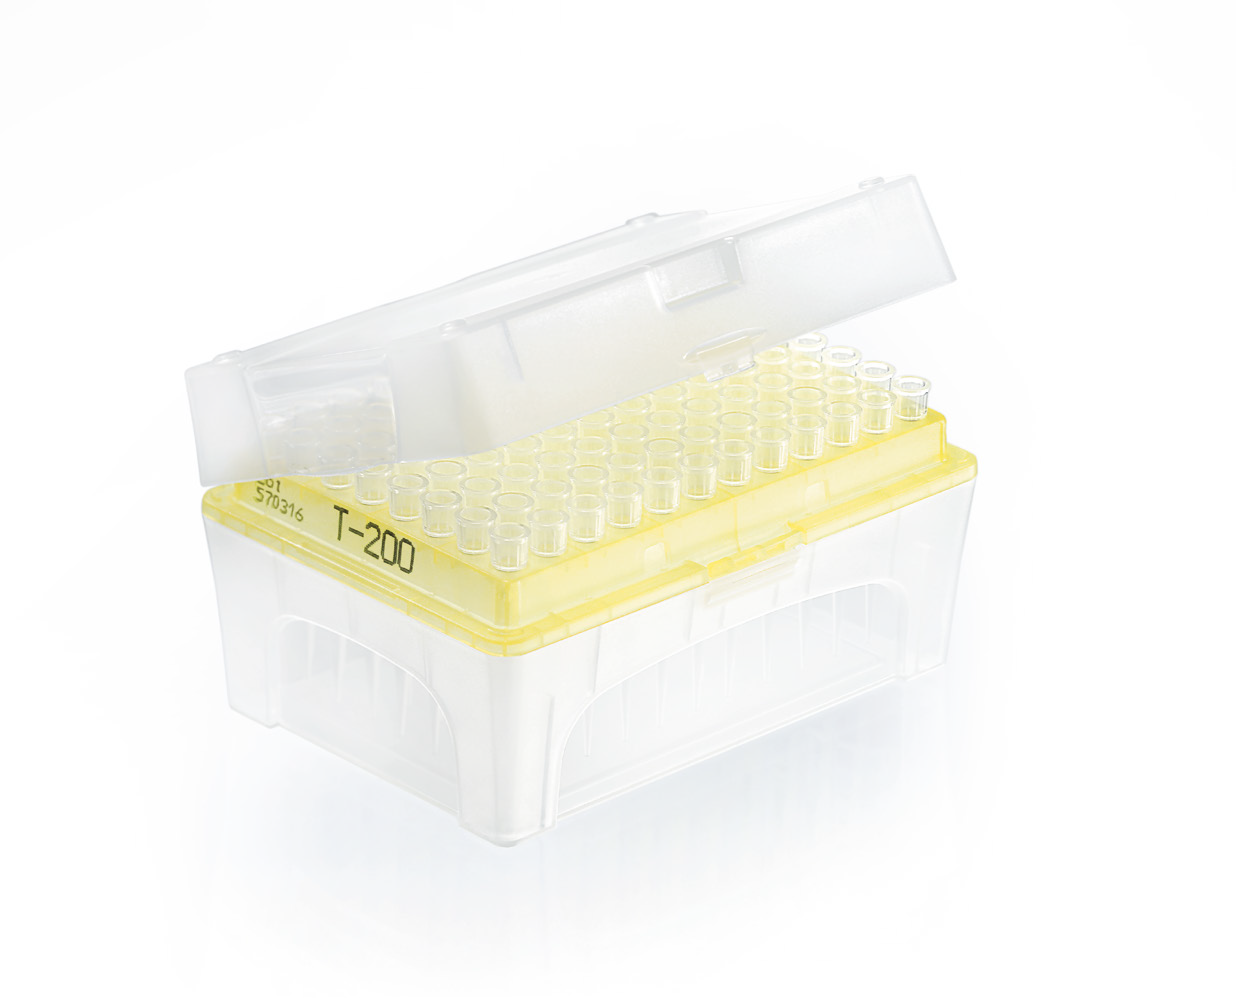 Filter tips ULR rack DNA-/RNase-free IVD TipBox N 1,0 - 20 μl BIO-CERT PCK=960